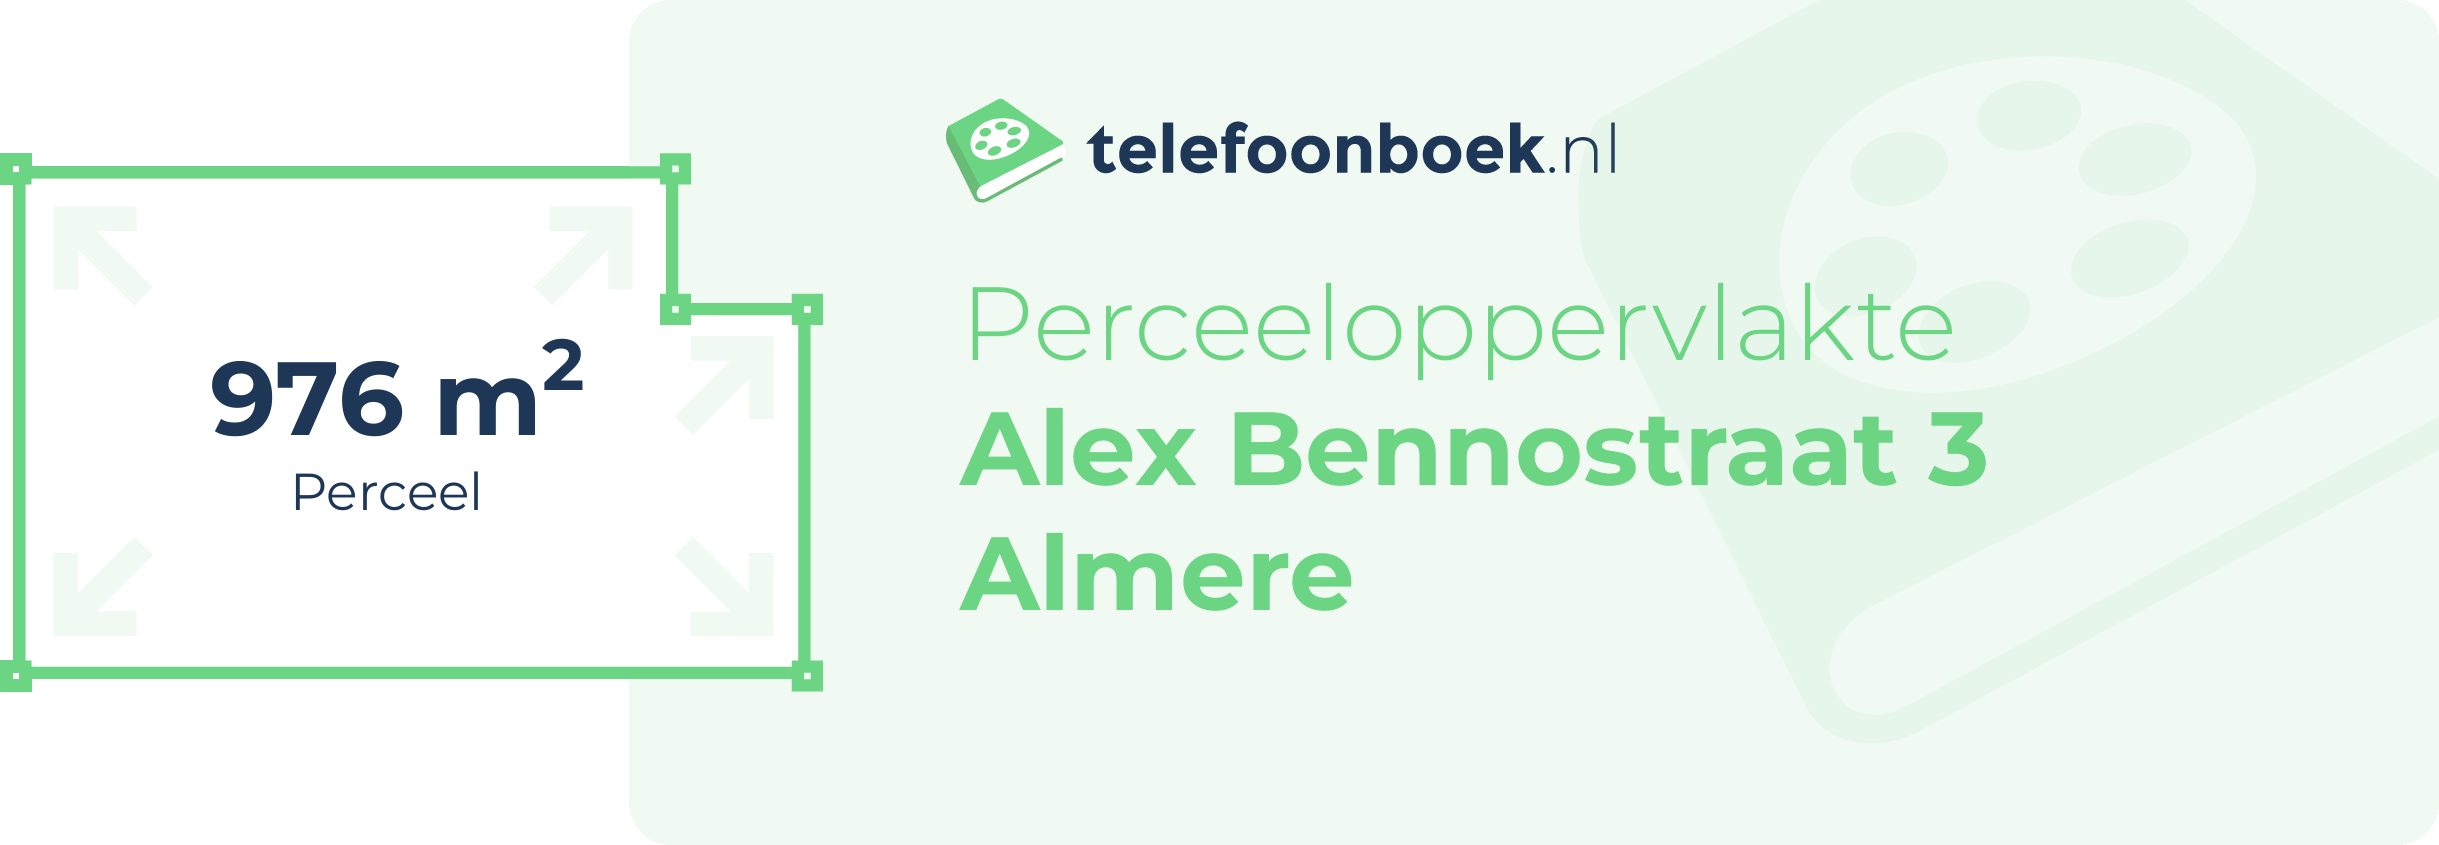 Perceeloppervlakte Alex Bennostraat 3 Almere